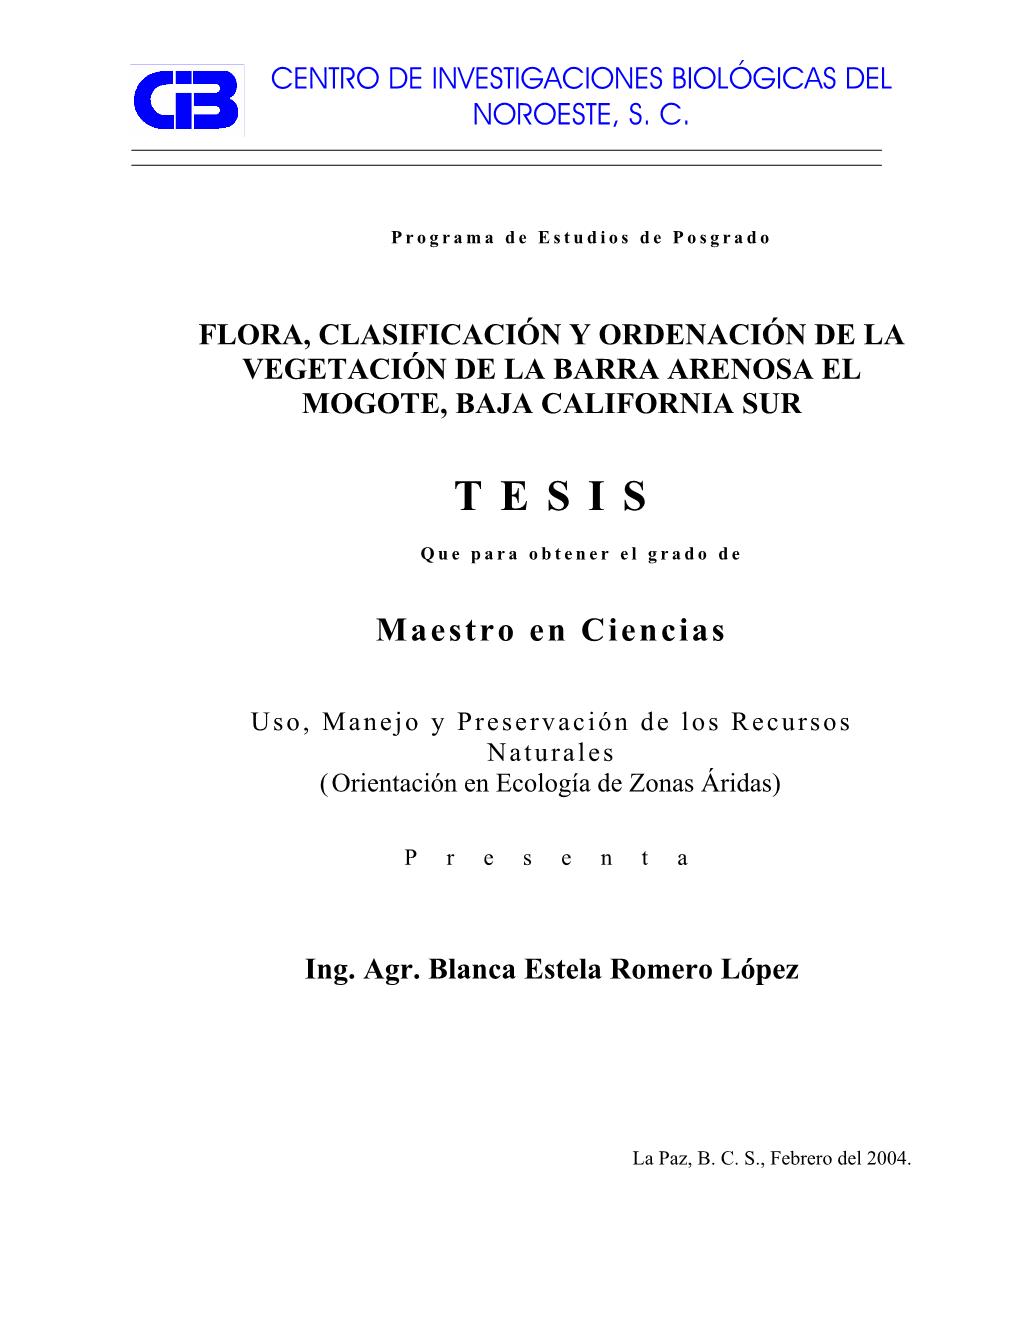 Flora, Clasificación Y Ordenación De La Vegetación De La Barra Arenosa El Mogote, Baja California Sur Tesis